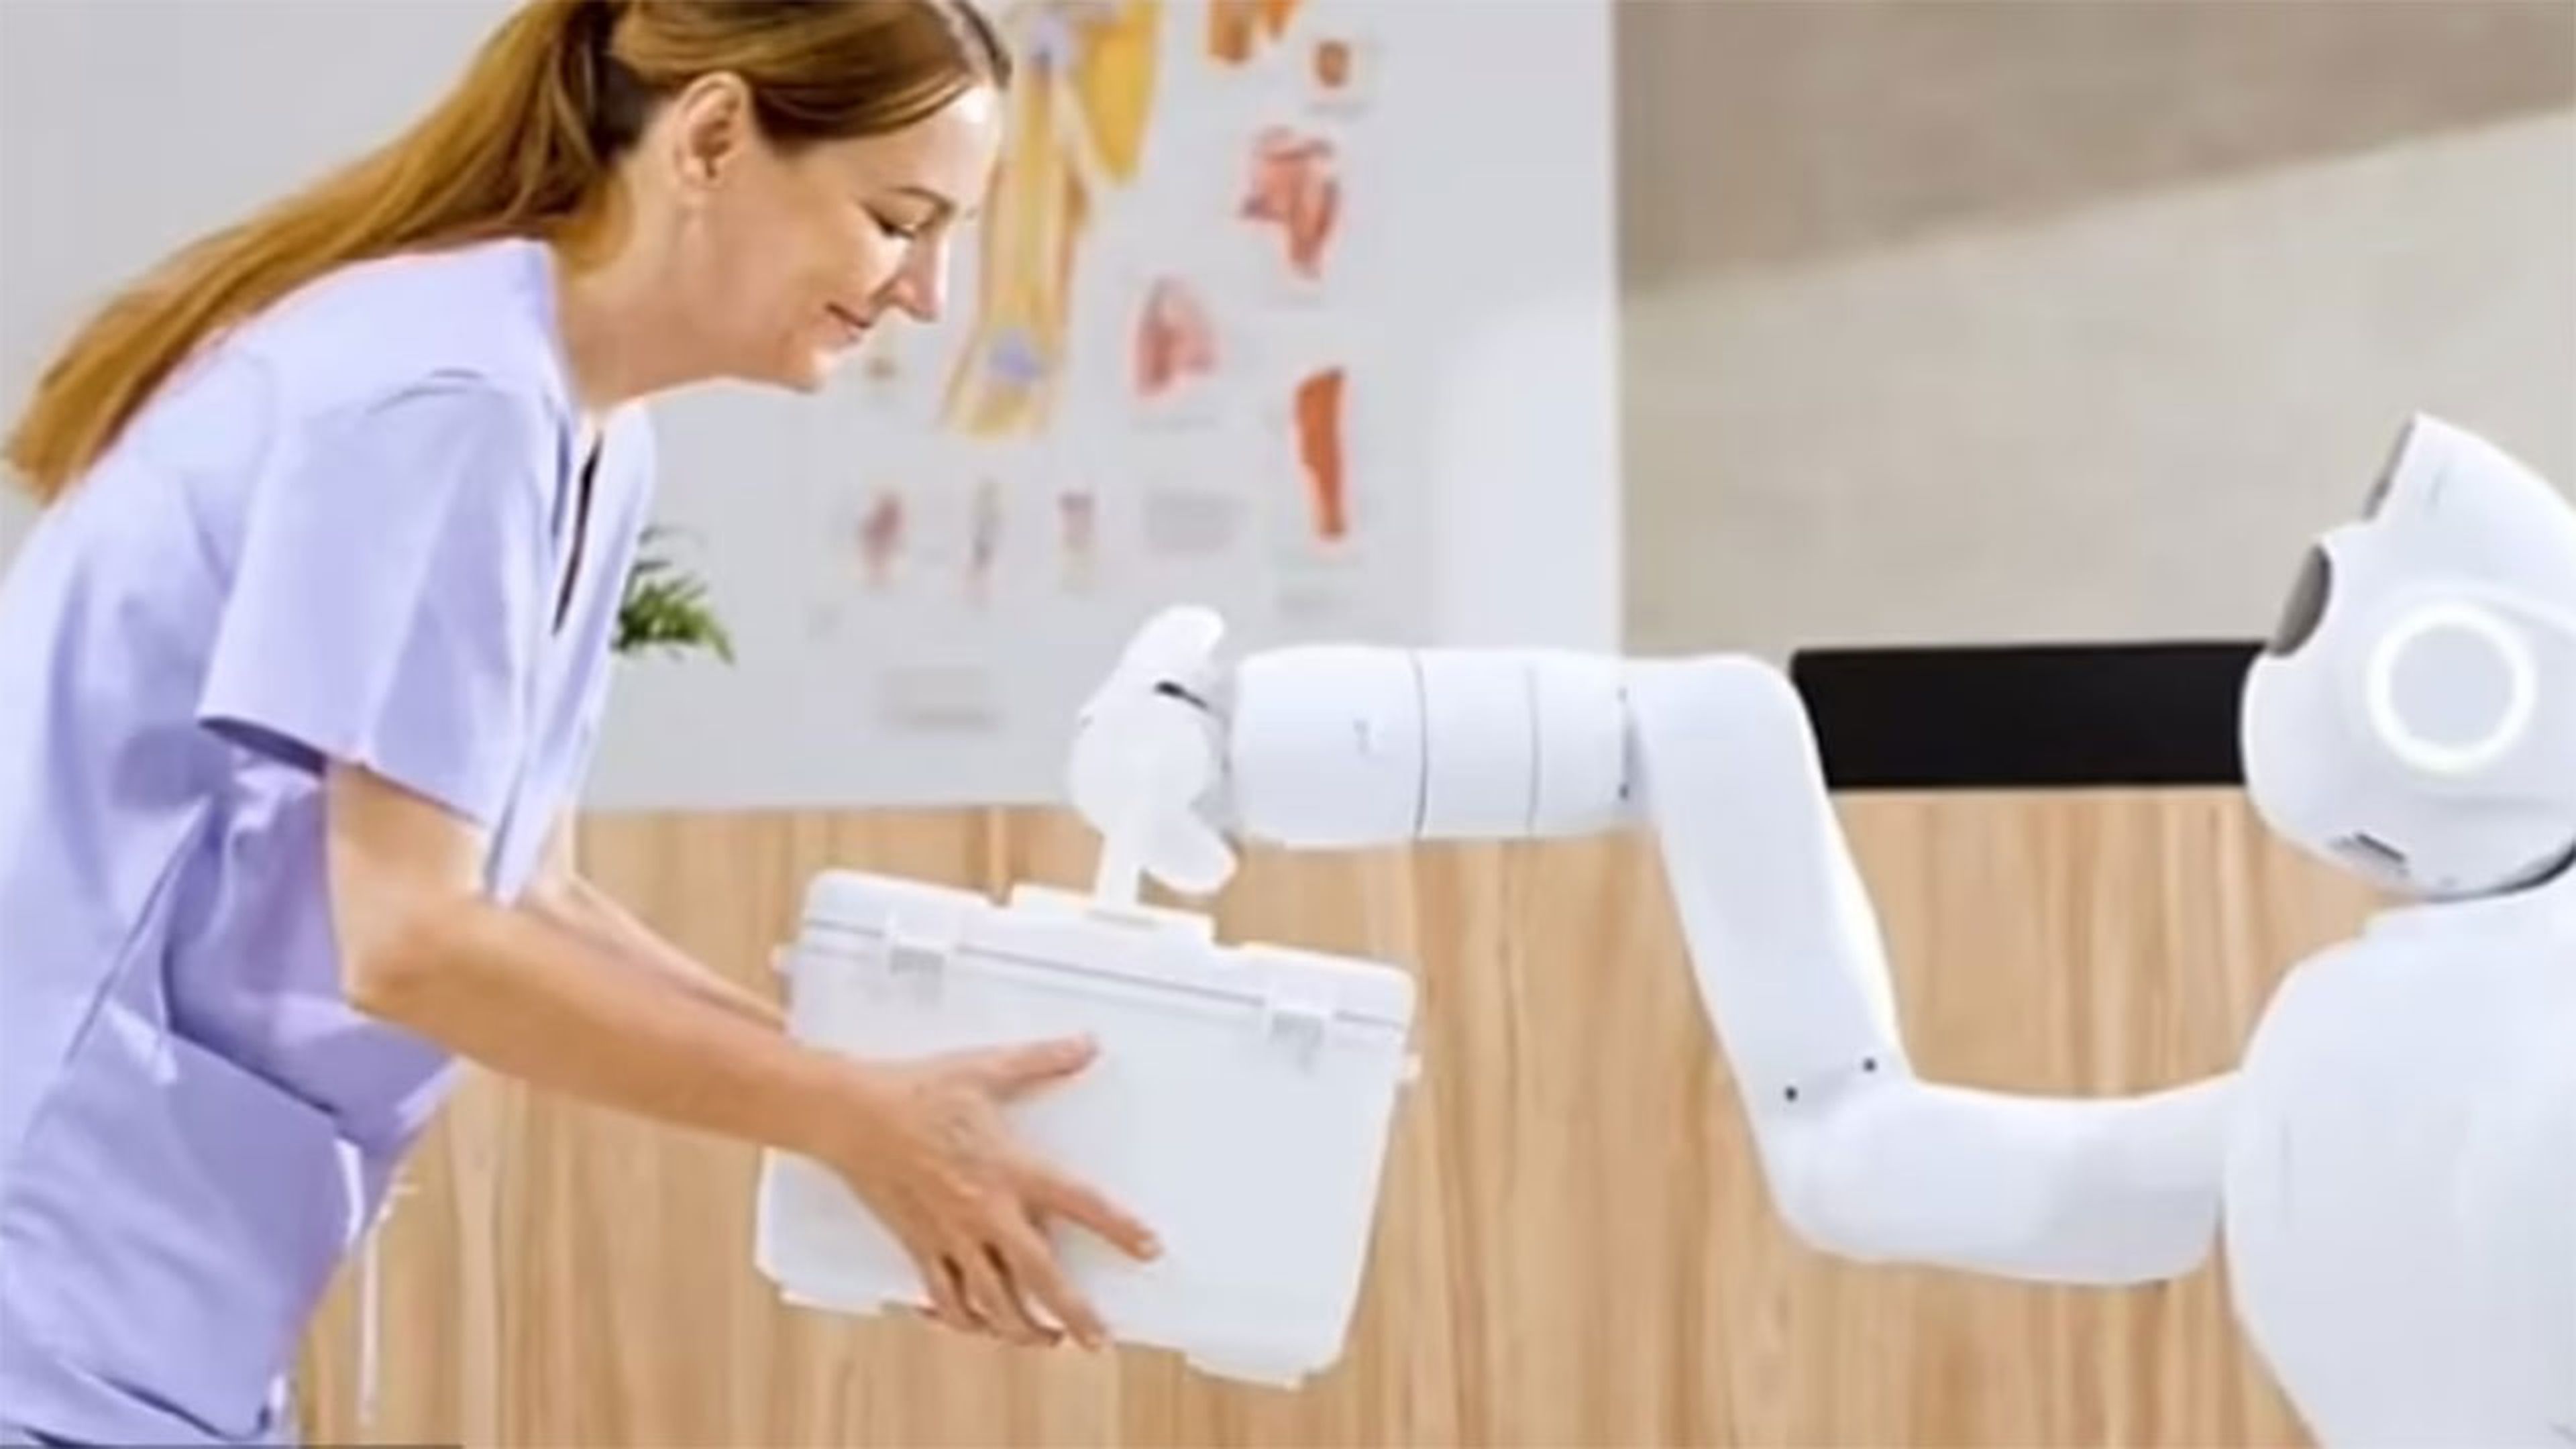 El robot que puede ser guardia de seguridad, limpiador y cuidador en los hospitales